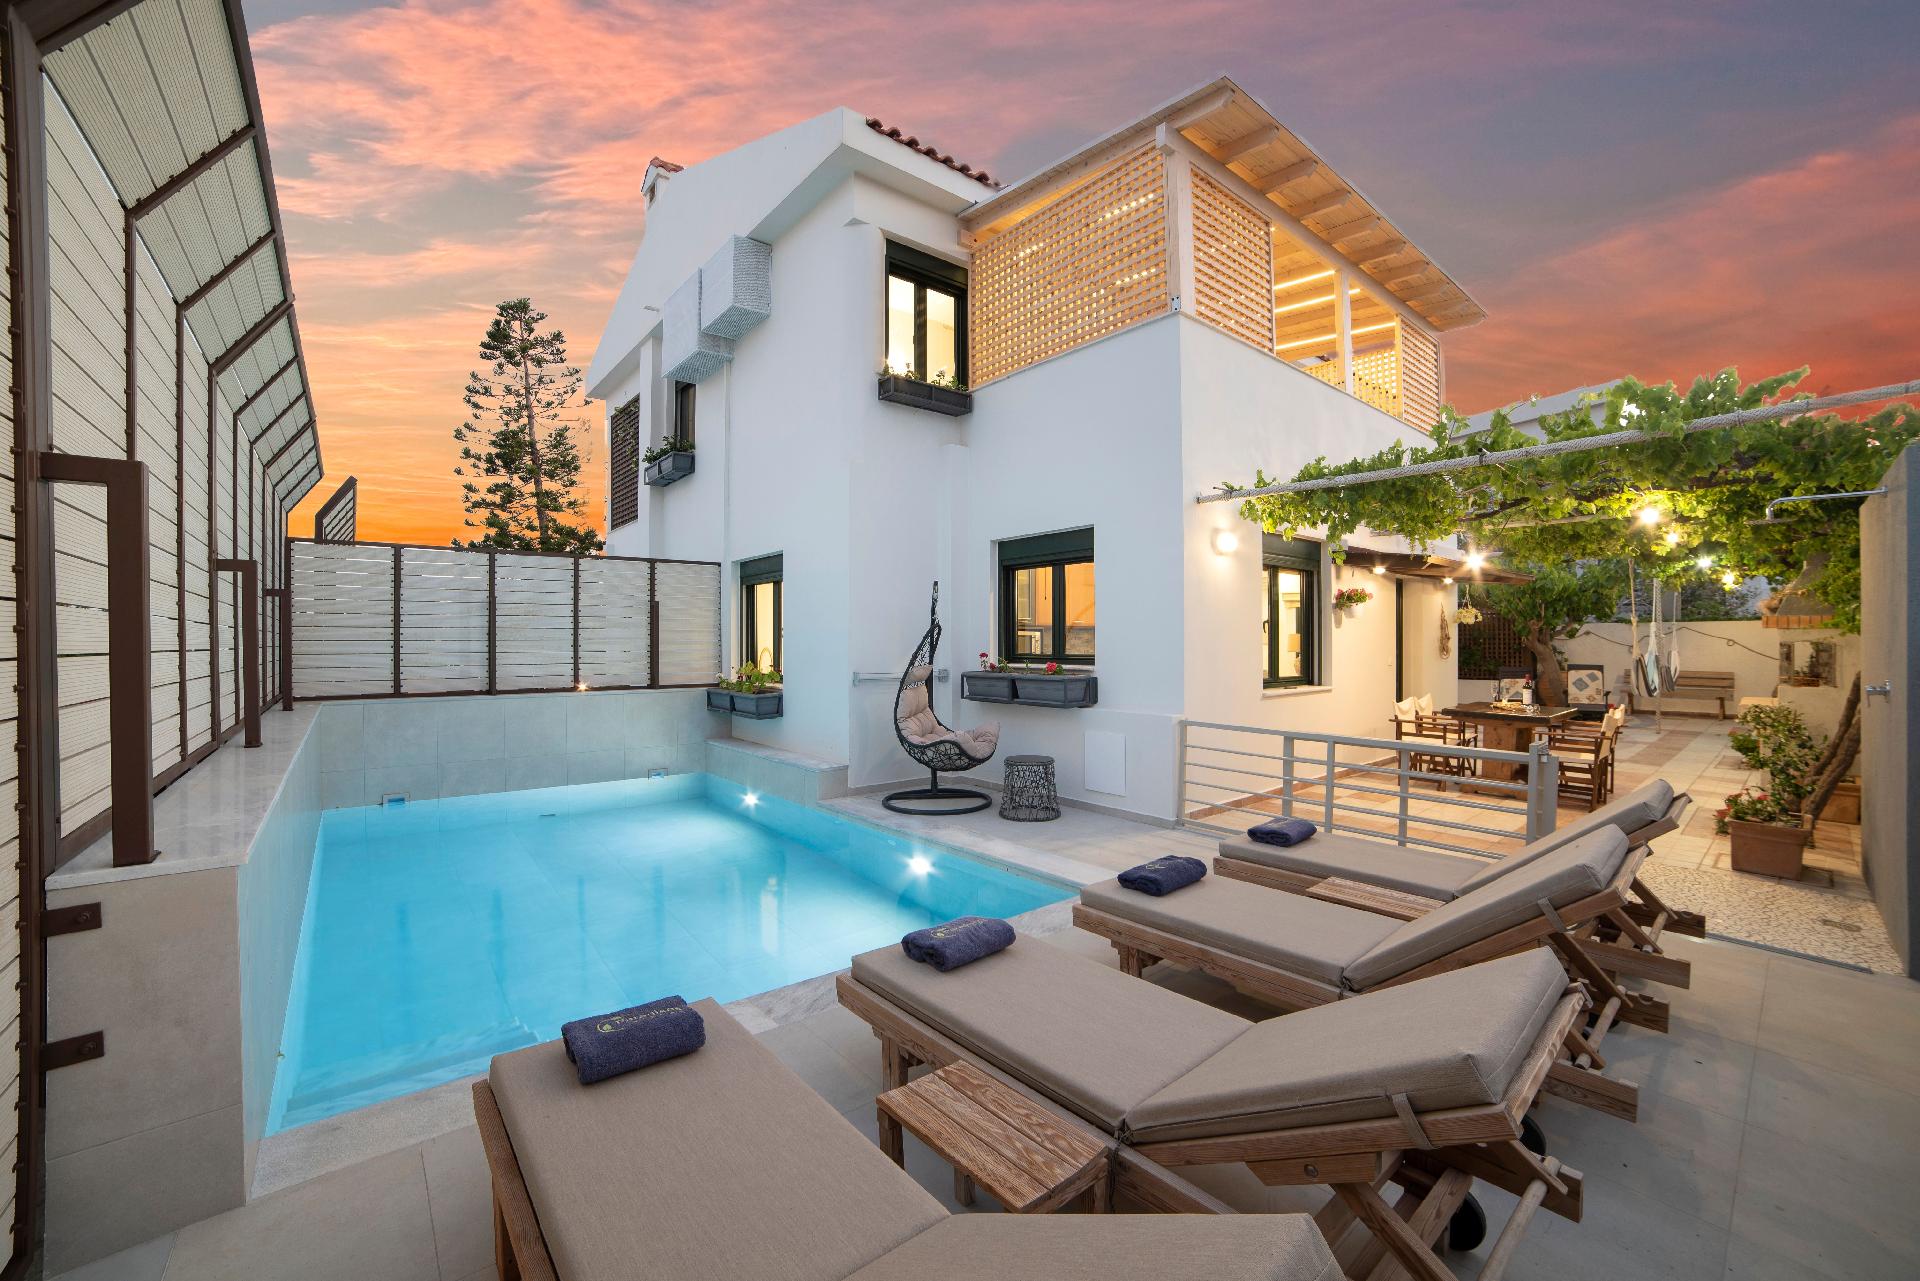 Ferienhaus mit Privatpool für 4 Personen  + 3 Ferienhaus in Griechenland